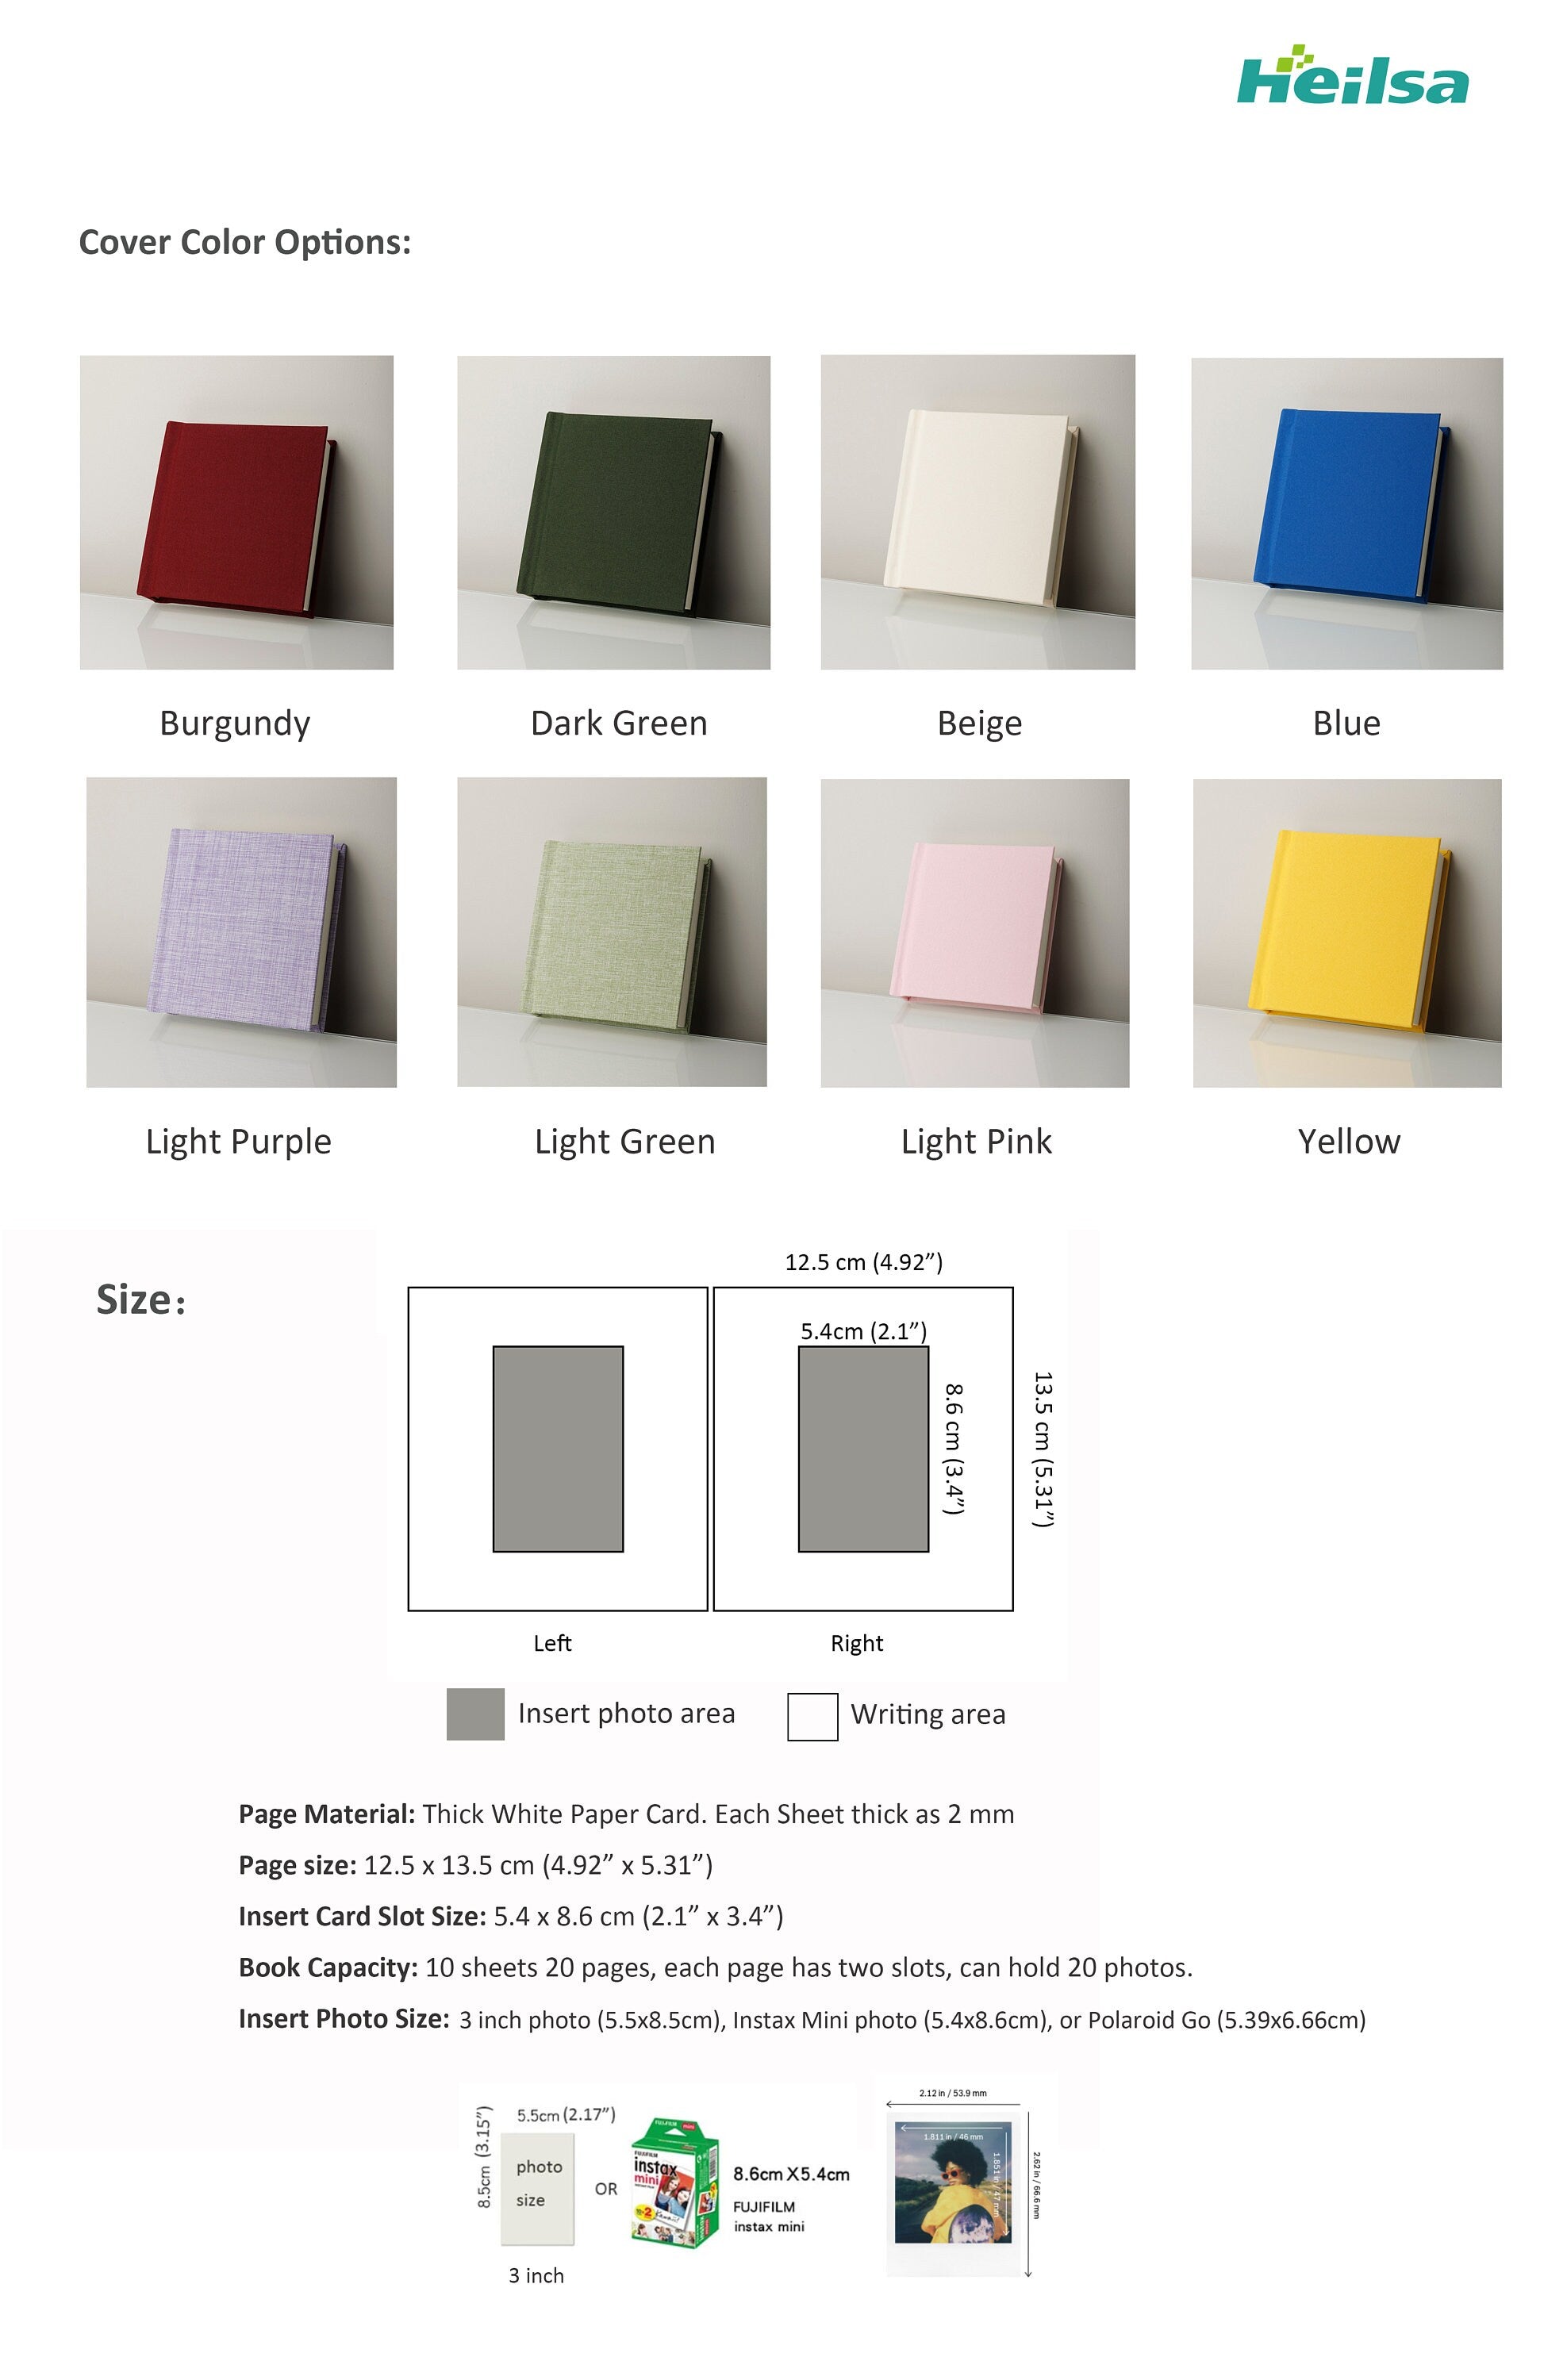 Colorful Instax Mini Photo Album Personalized. Small Square 20 Photo Instax Album Fujifilm Instax Mini 3 Inch Memory Book Wedding 8 Colors